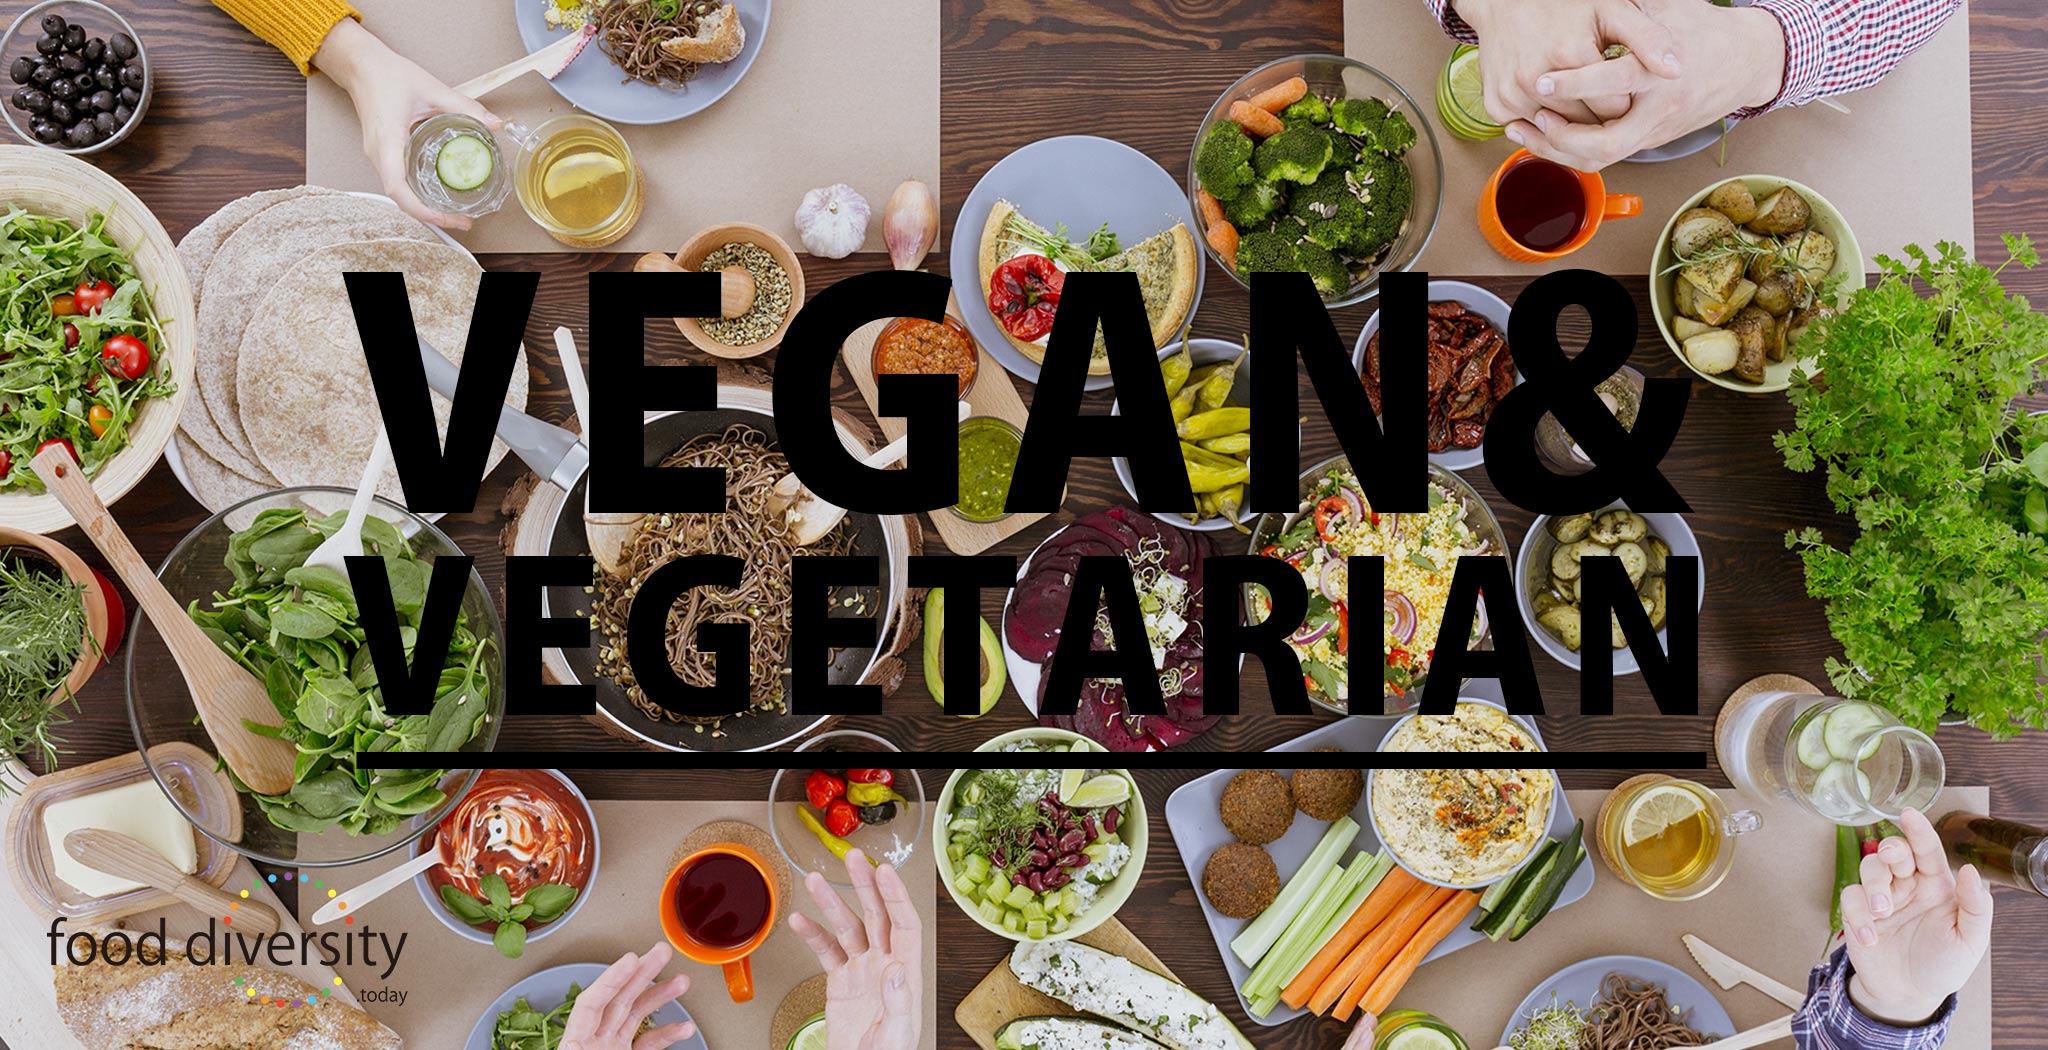 food diversity.today Vegan&Vegetarian